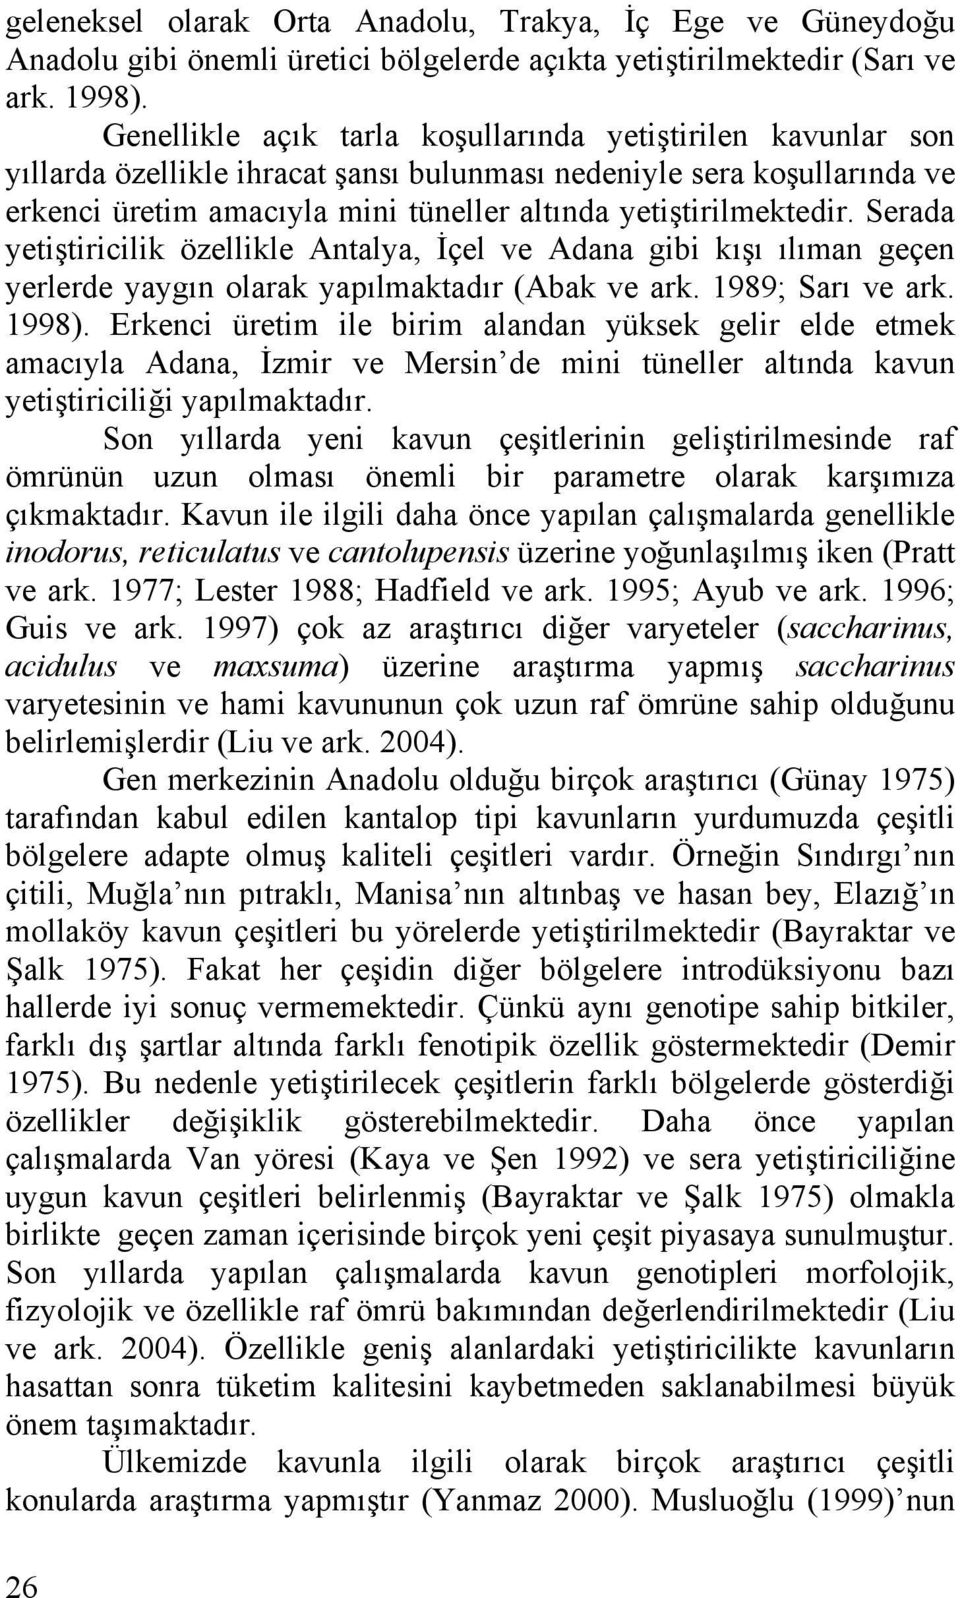 Serada yetiştiricilik özellikle Antalya, İçel ve Adana gibi kışı ılıman geçen yerlerde yaygın olarak yapılmaktadır (Abak ve ark. 1989; Sarı ve ark. 1998).